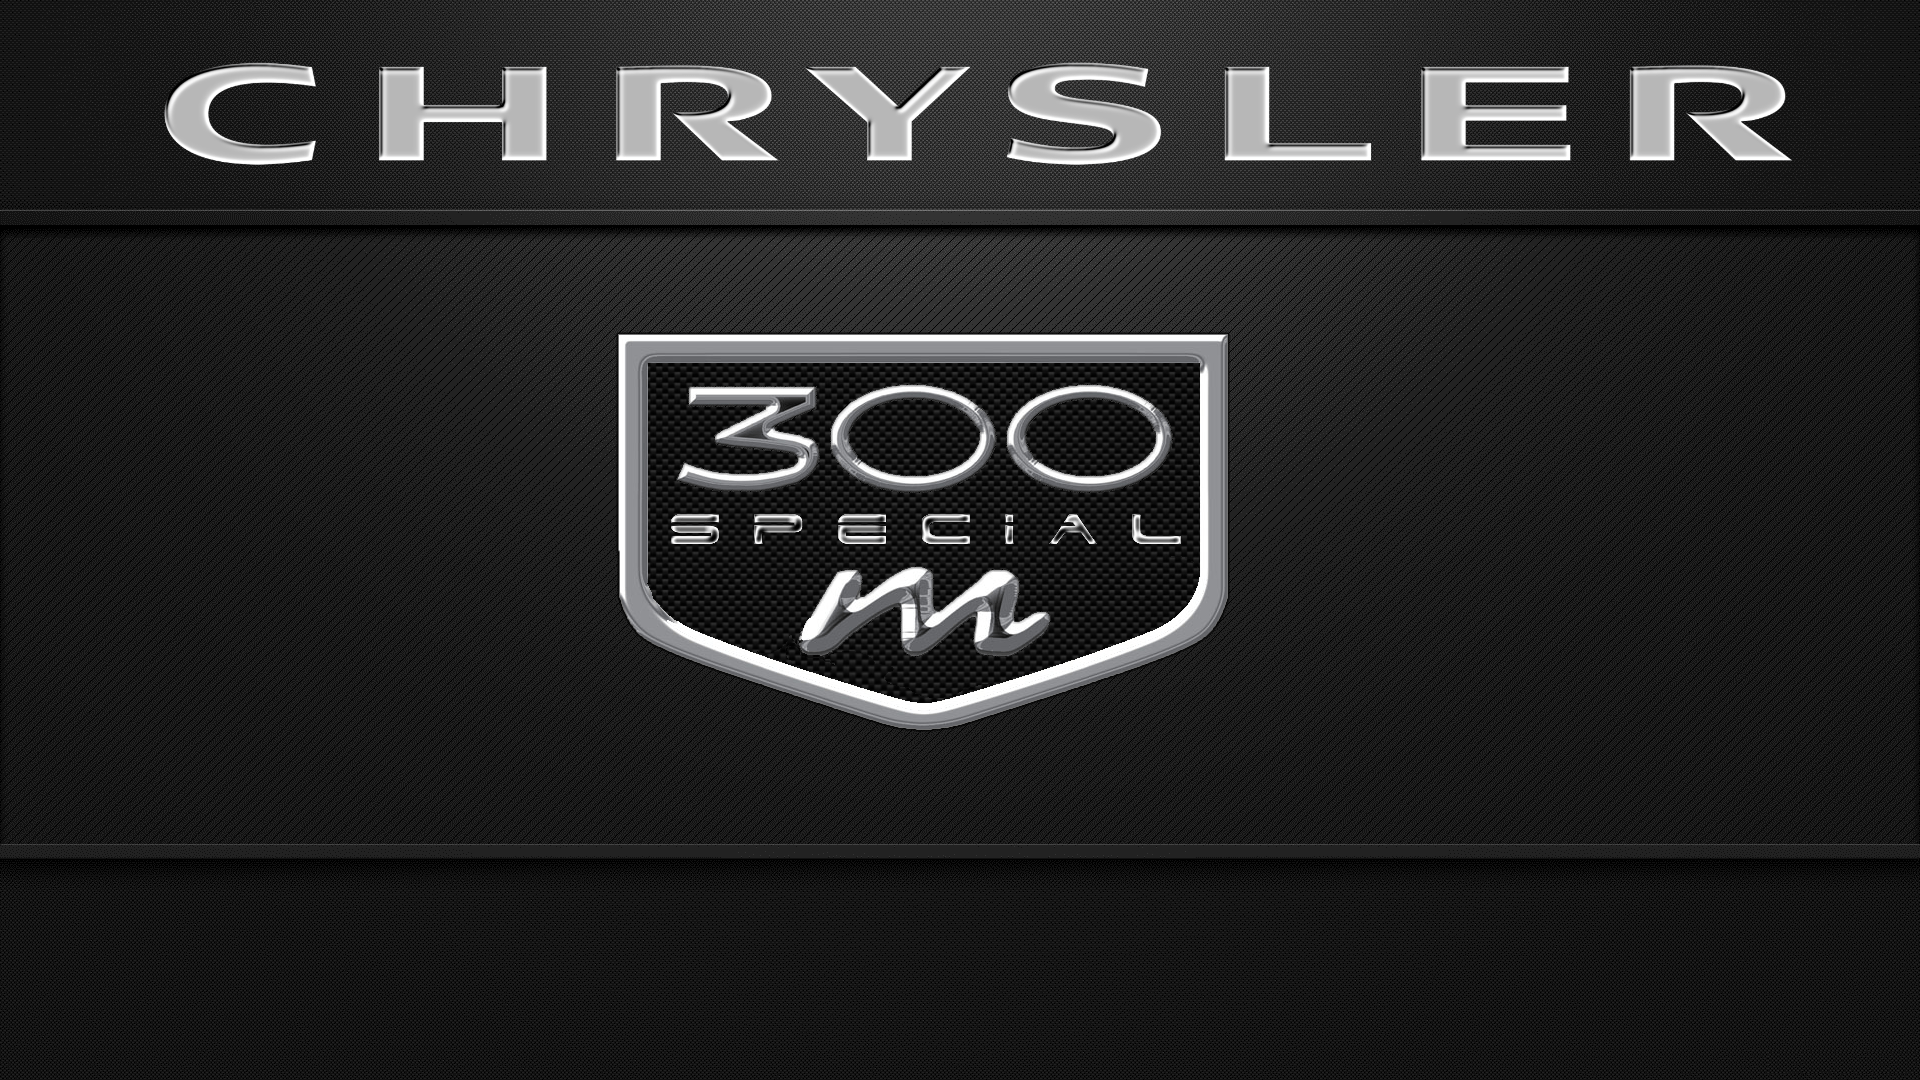 chrysler 300m logo